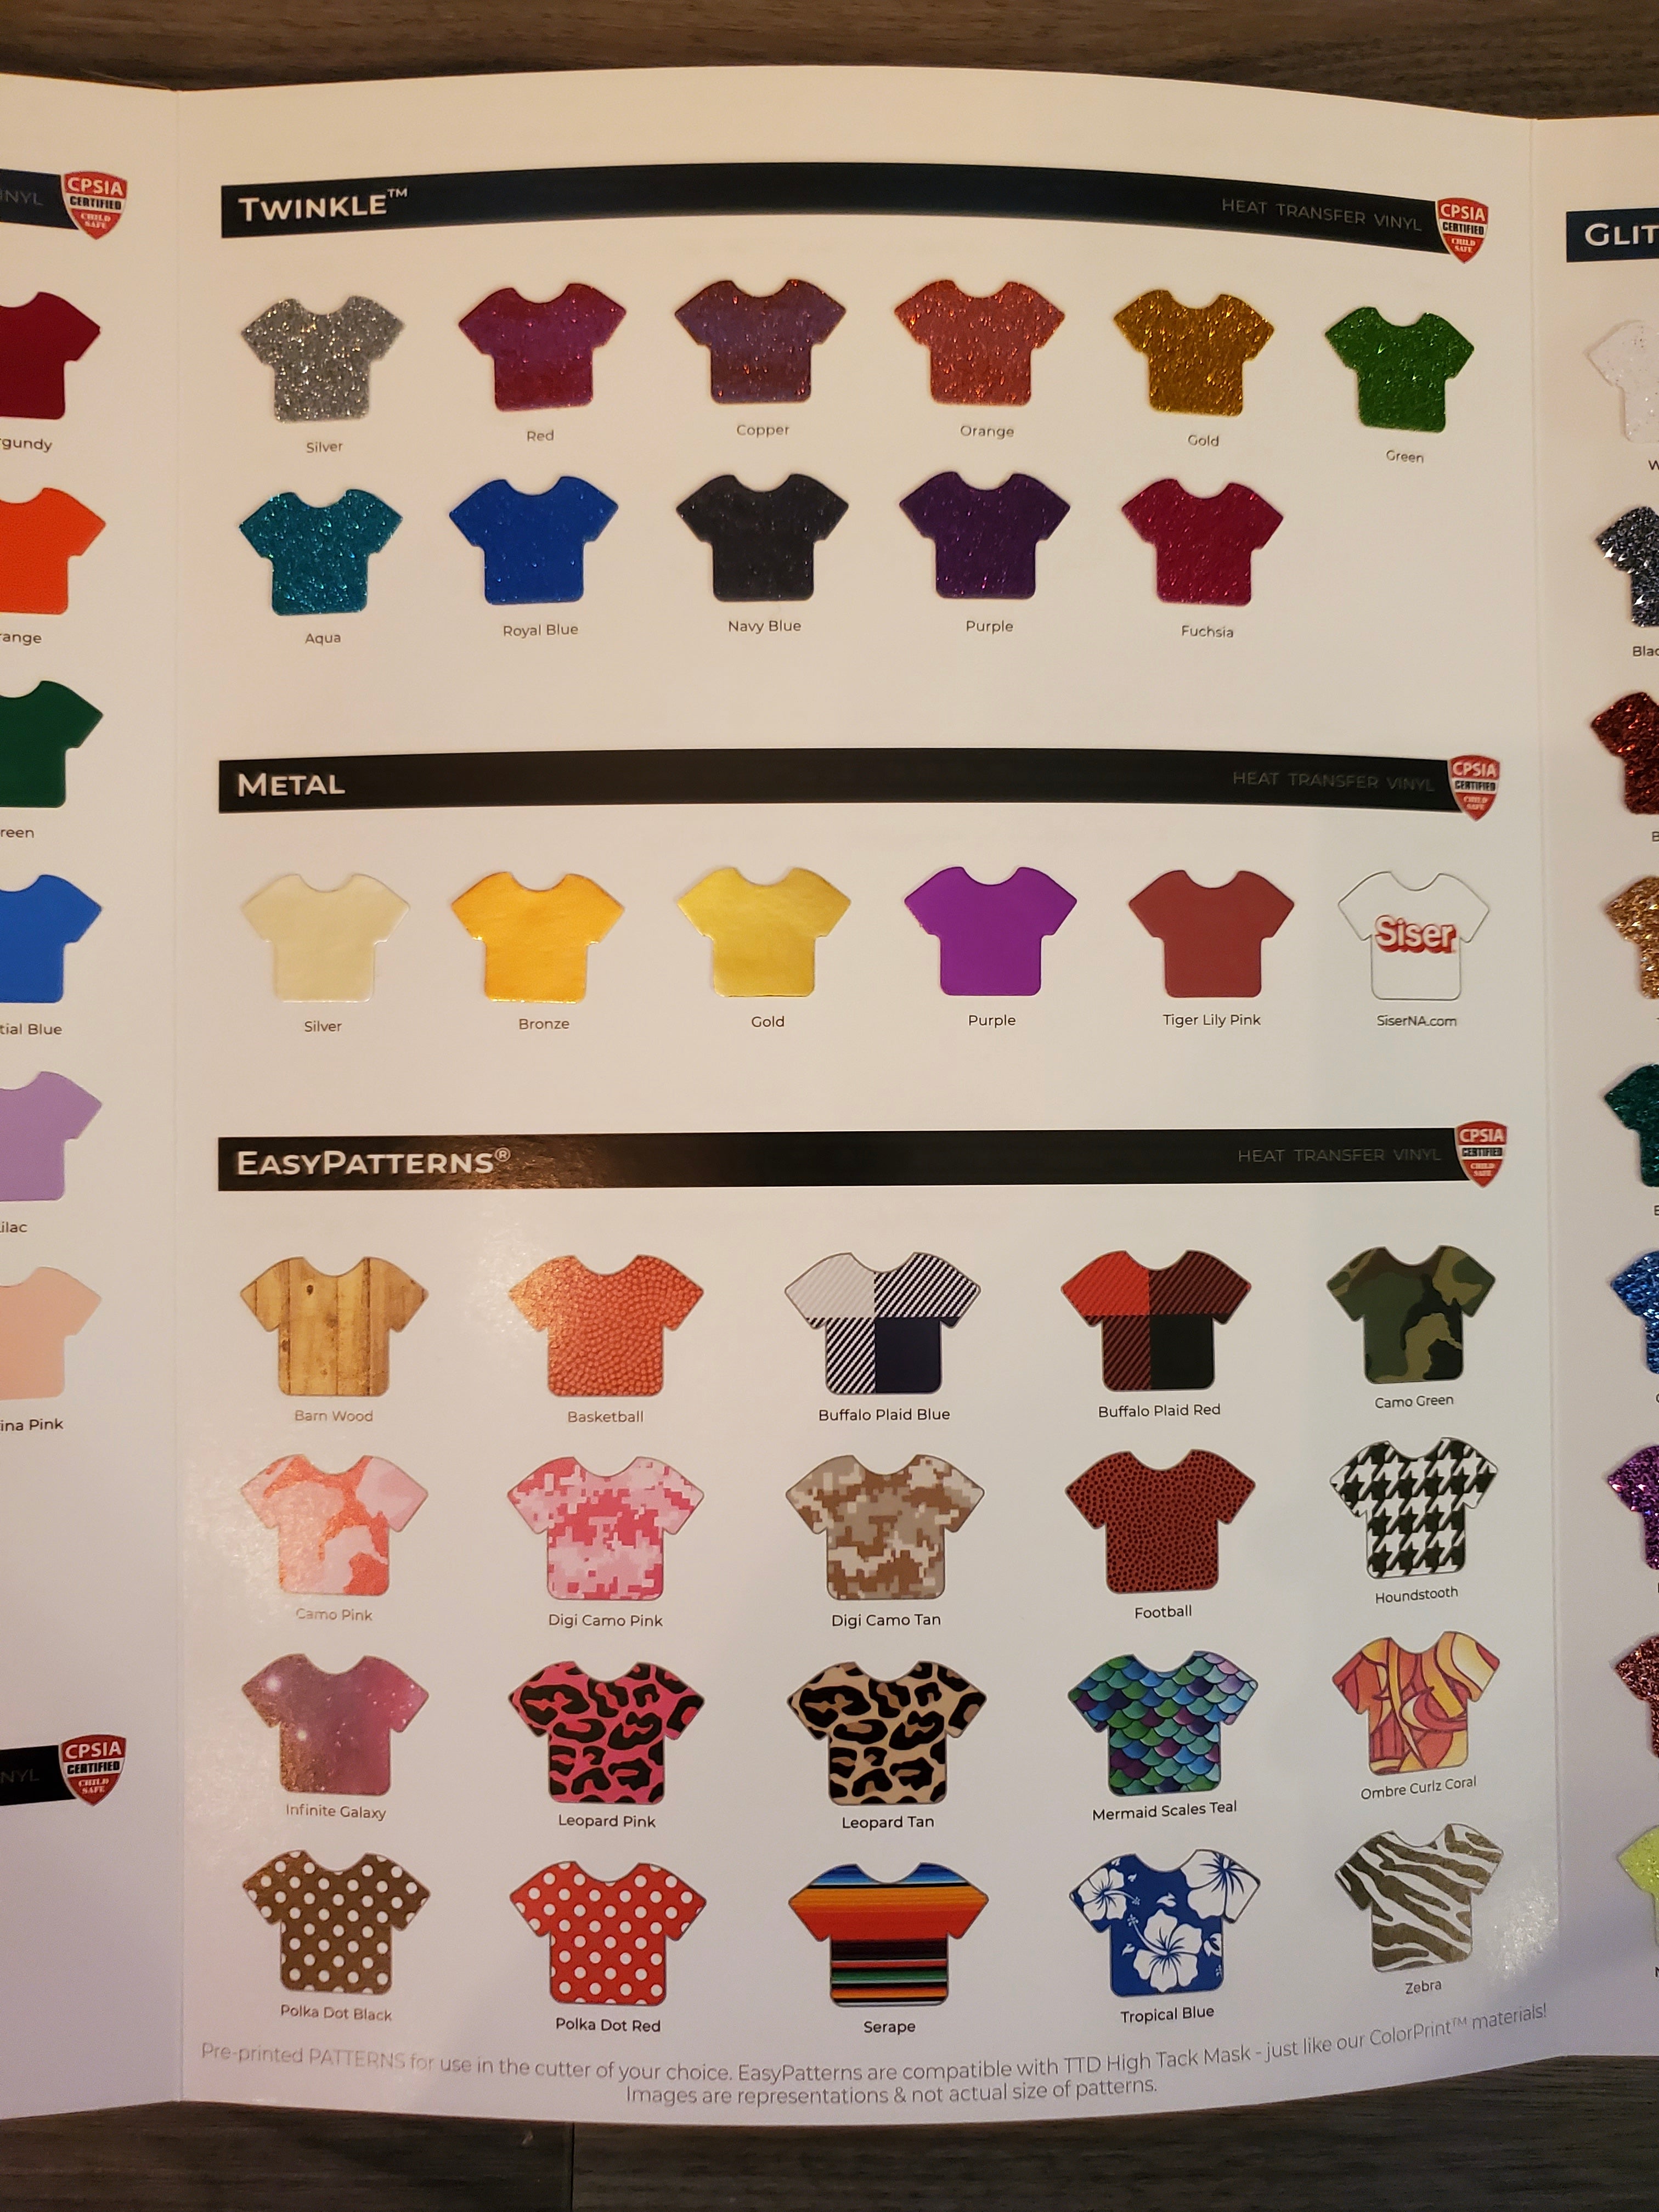 Siser Colour Guide